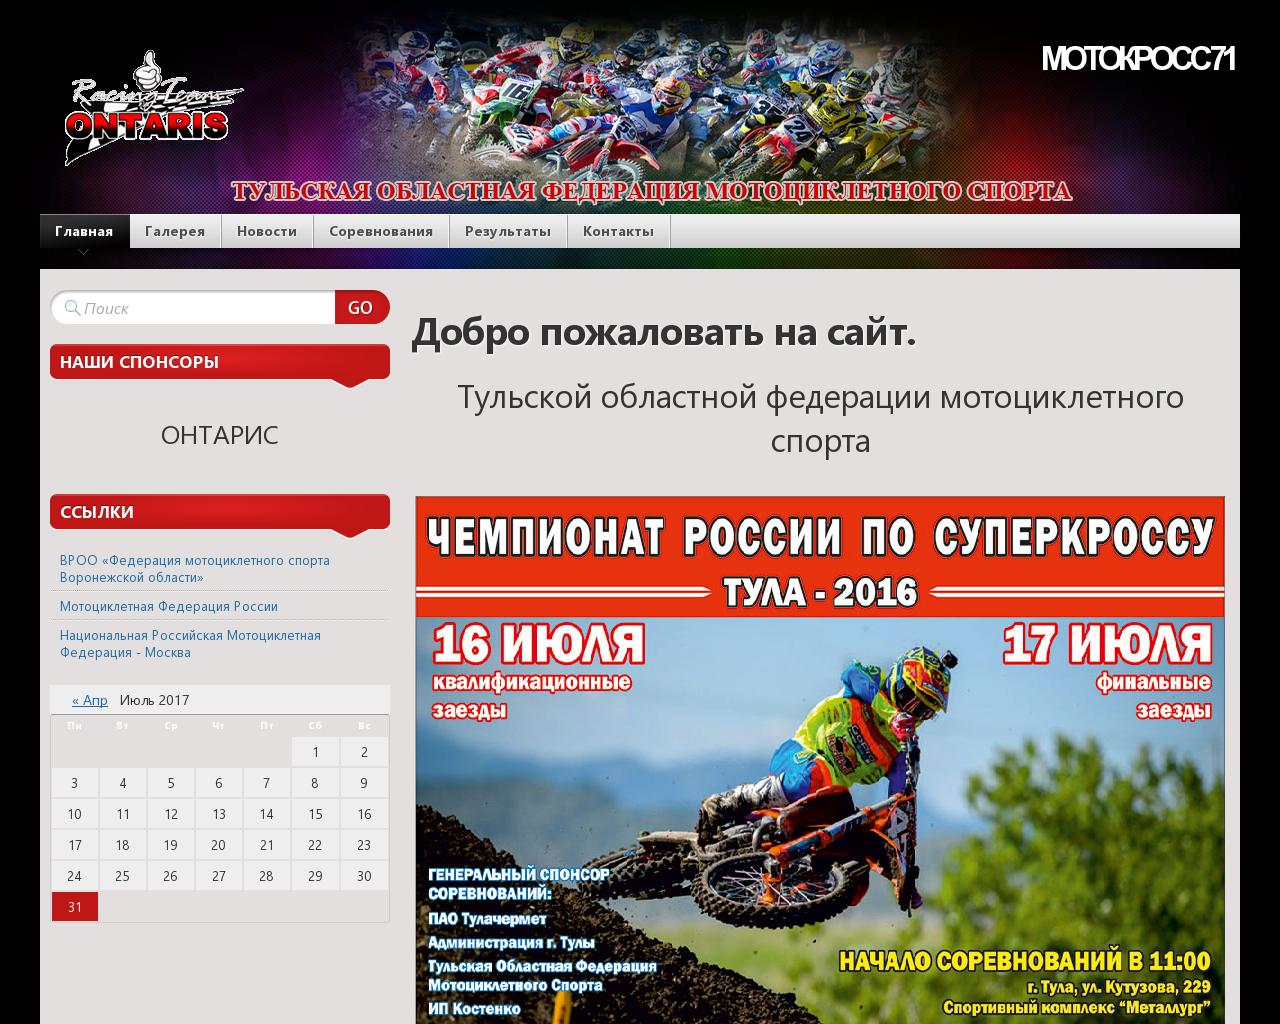 Изображение сайта motocross71.ru в разрешении 1280x1024